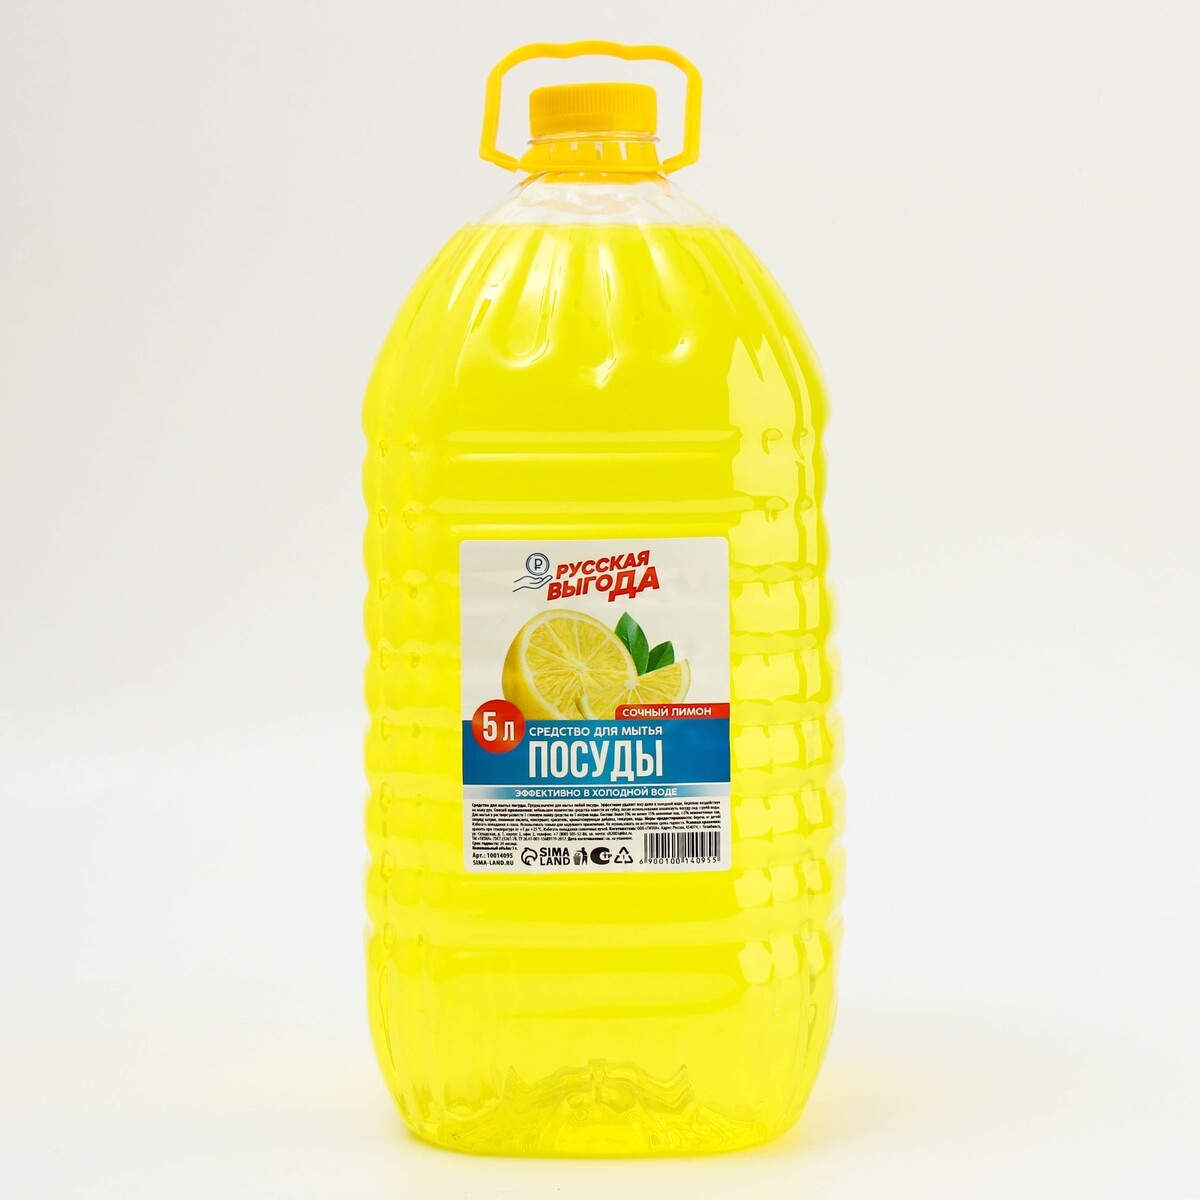 Средство для мытья посуды, аромат лимон, 5 л, русская выгода русская идея